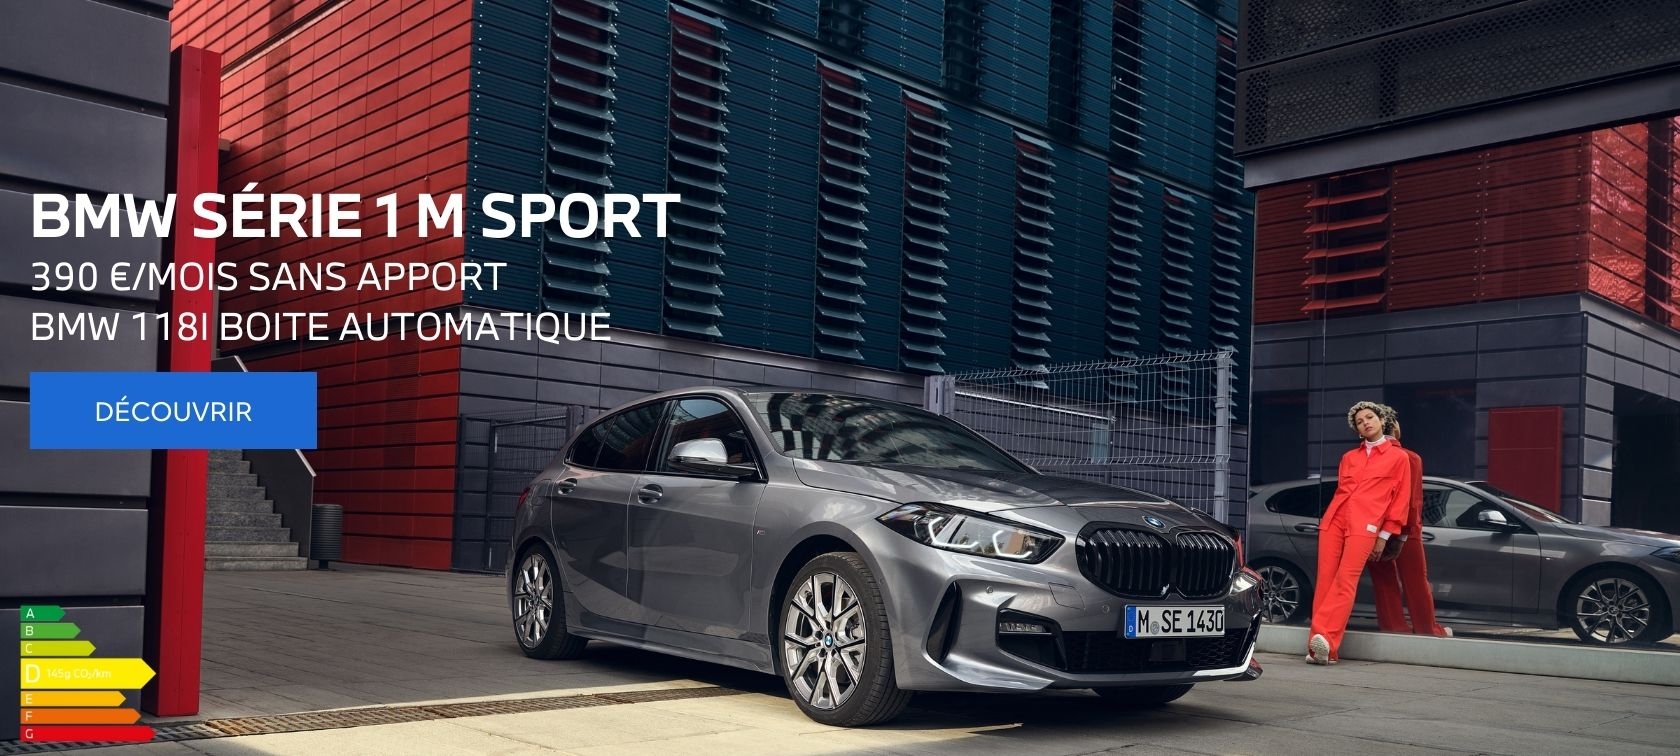 BMW Série 1 M Sport 390 €/MOIS SANS APPORT